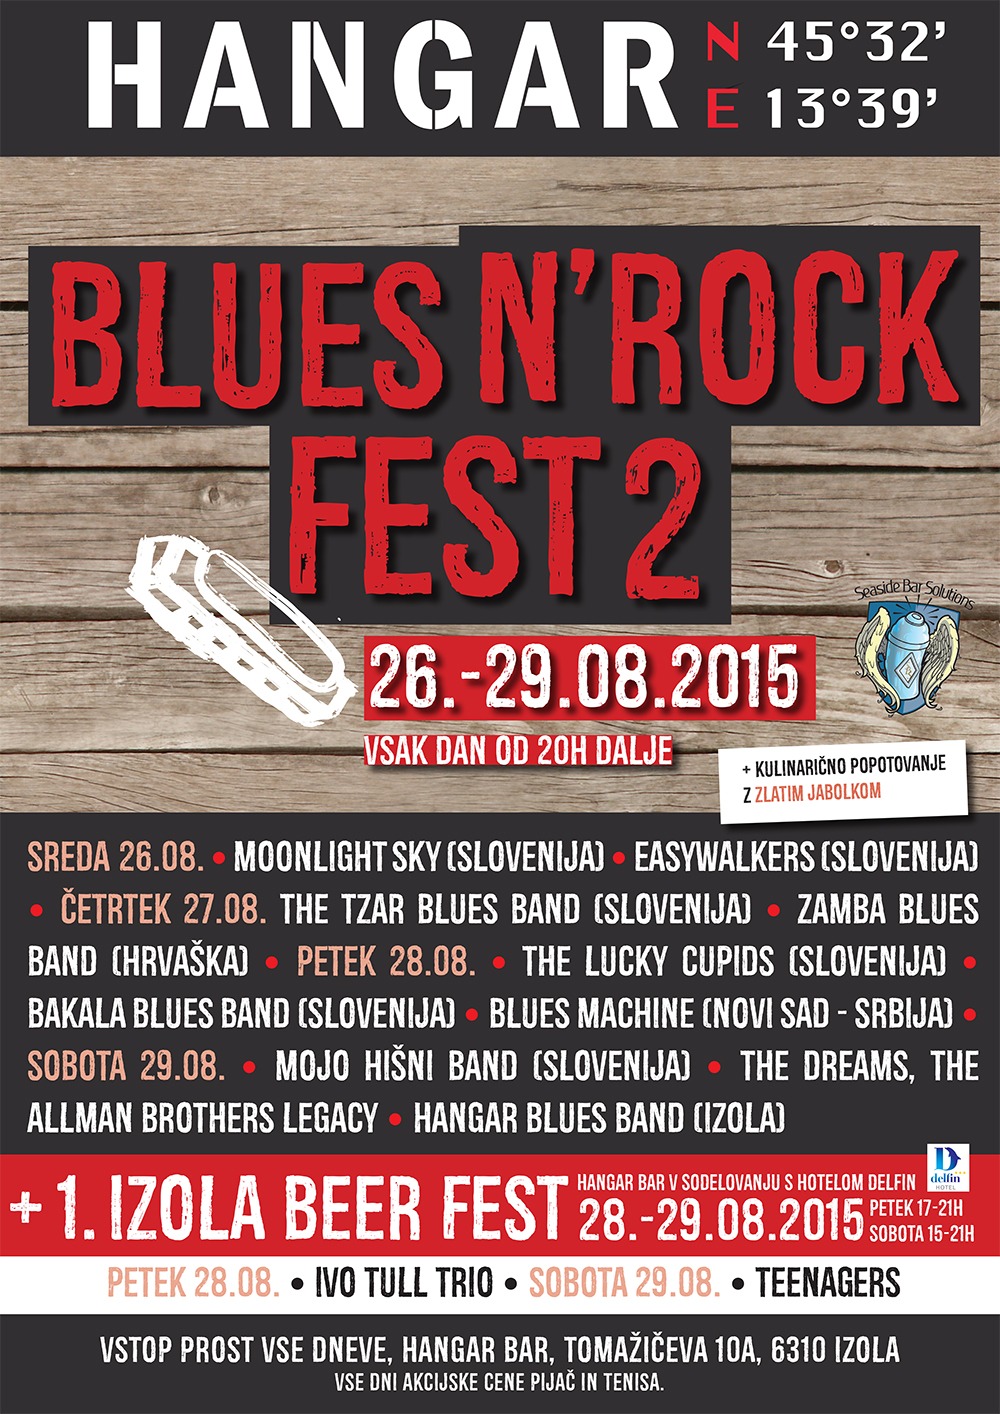 Prihajata drugi Blues’n’rock fest in prvi Izola beer fest